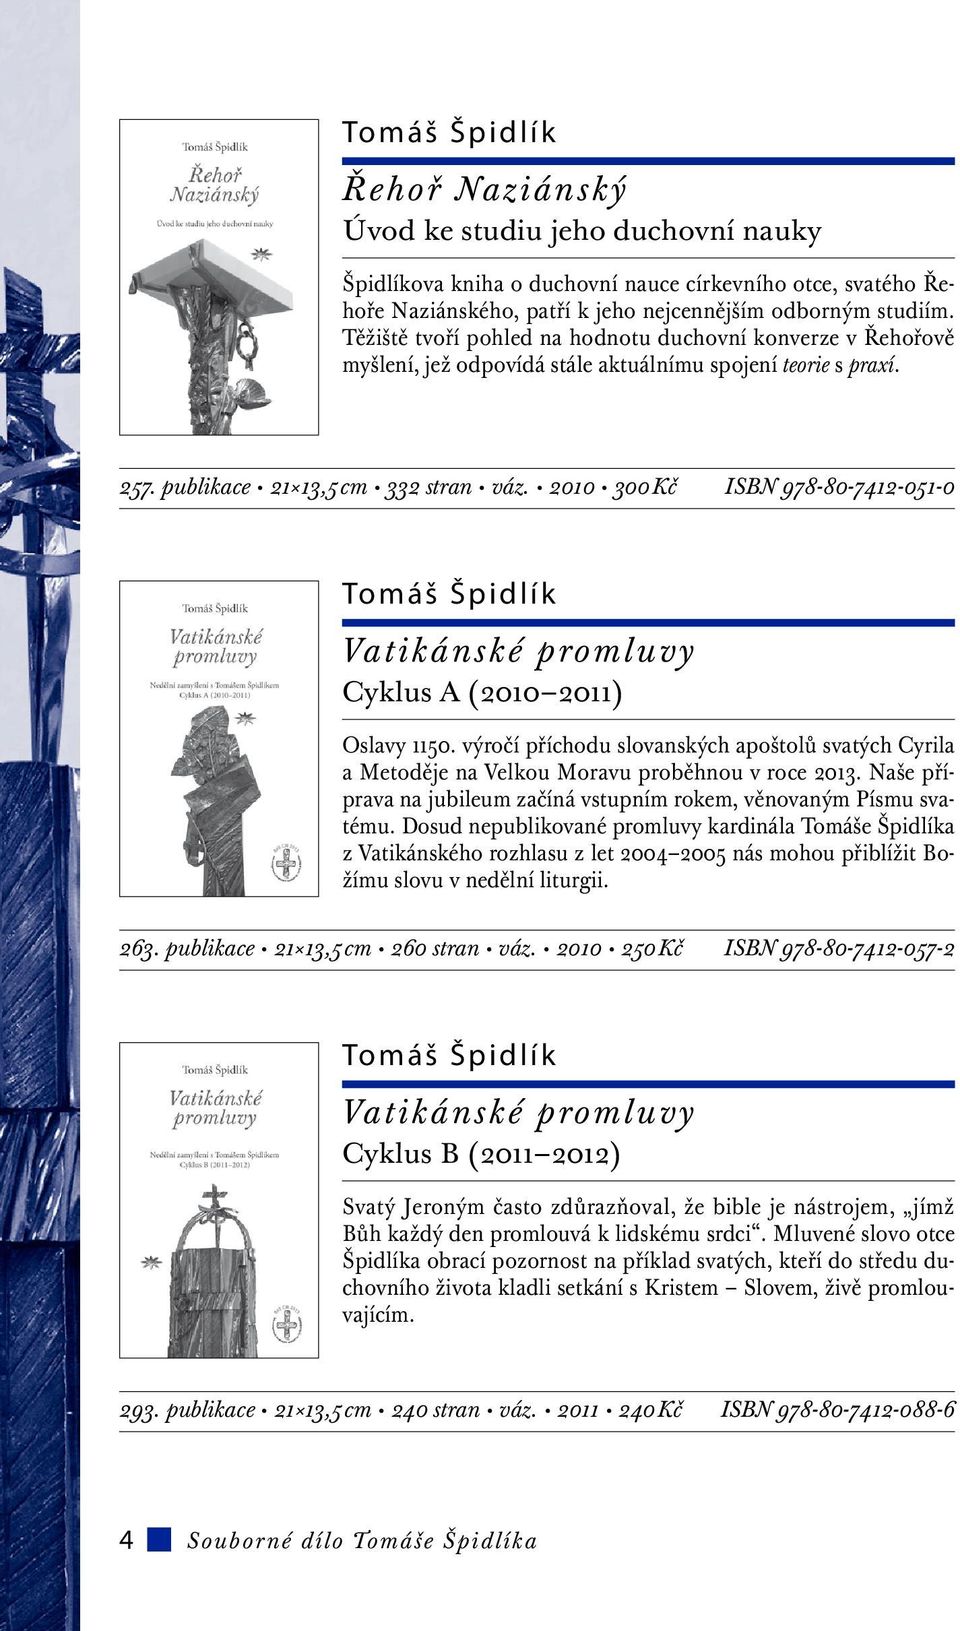 2010 300 Kč ISBN 978-80-7412-051-0 Tomáš Špidlík Vatikánské promluvy Cyklus A (2010 2011) Oslavy 1150.